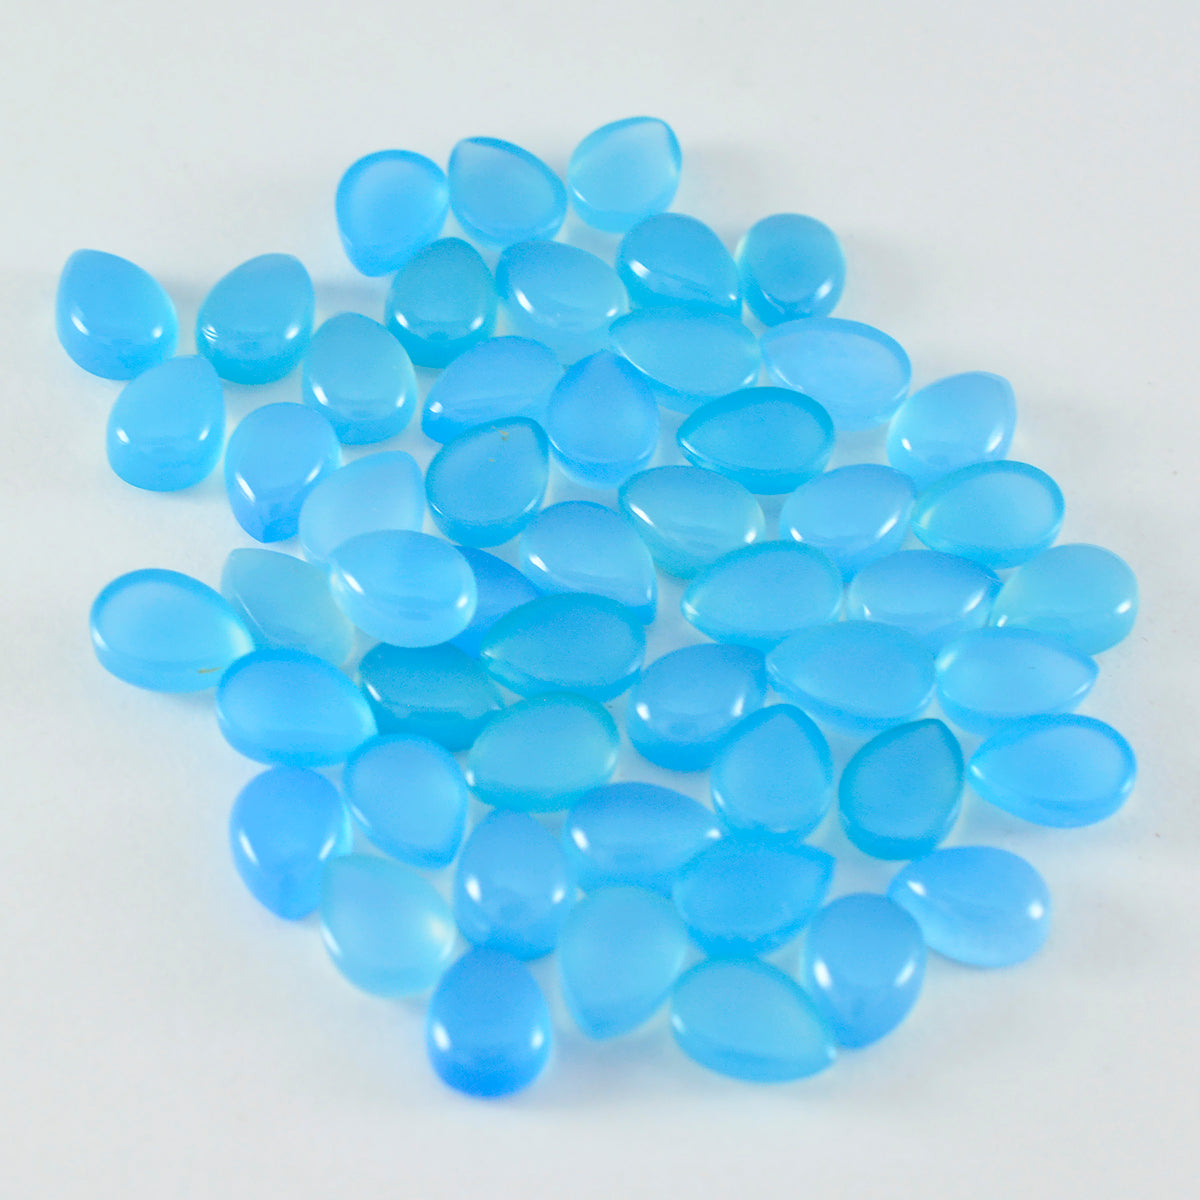 riyogems 1 st blå kalcedon cabochon 4x6 mm päronform en kvalitetsädelsten